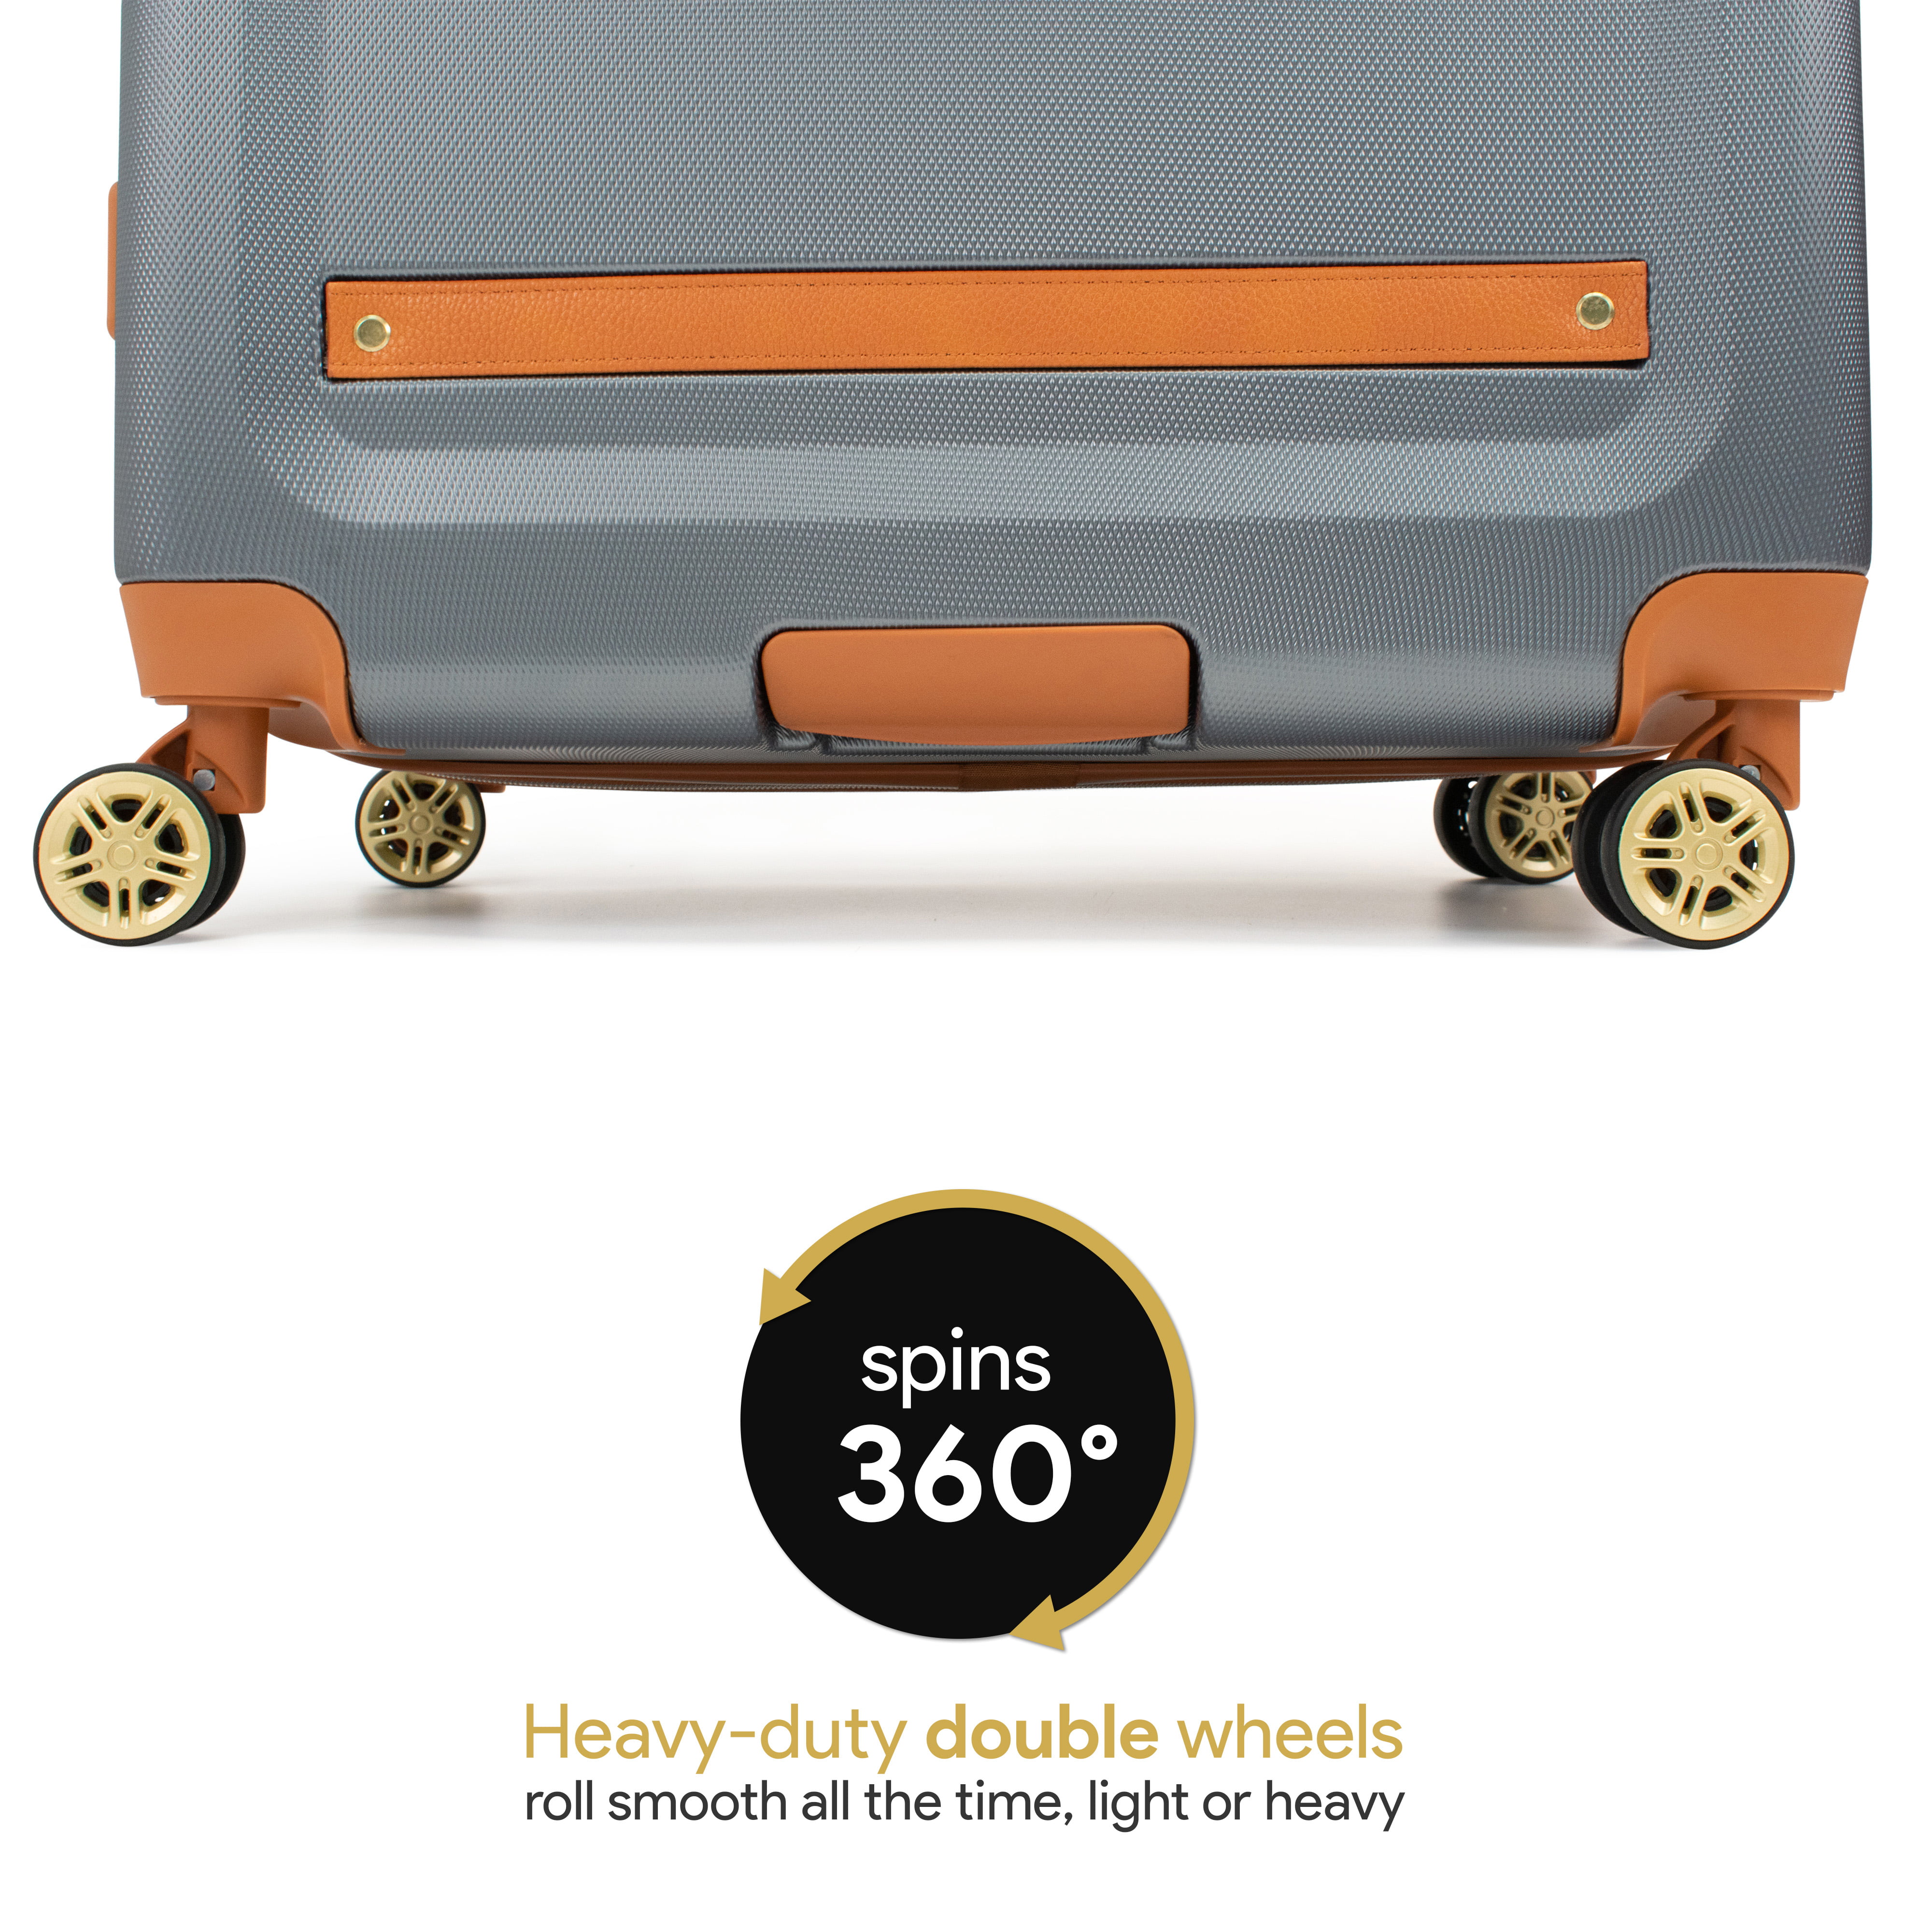 19V69 ITALIA Vintage Luggage Set – Travellty